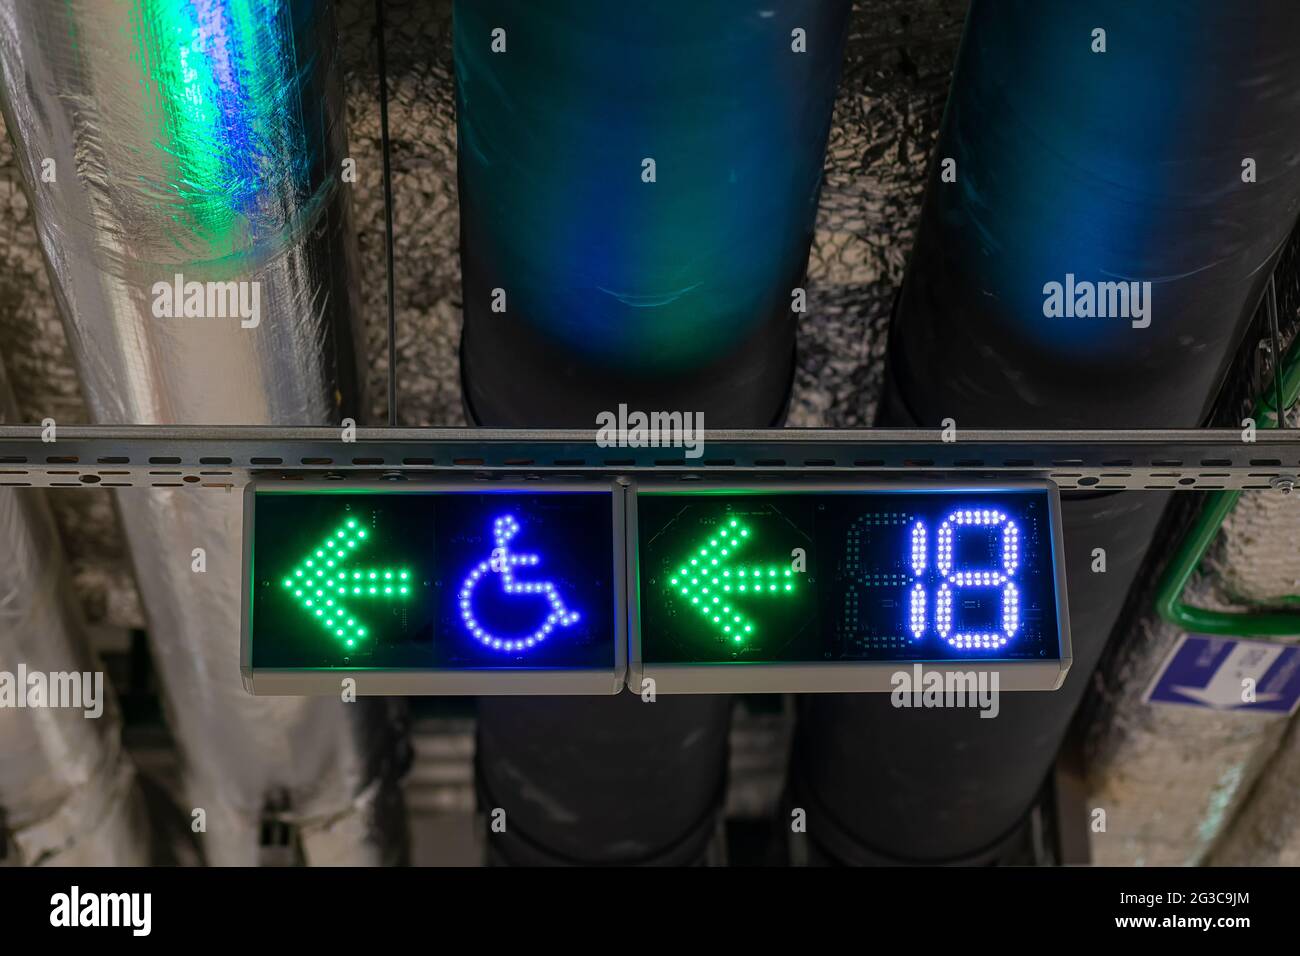 Plomberie sous le plafond du stationnement souterrain avec panneaux de signalisation. Placez une affiche pour les personnes handicapées. Panneau nombre de sièges gratuits. Banque D'Images